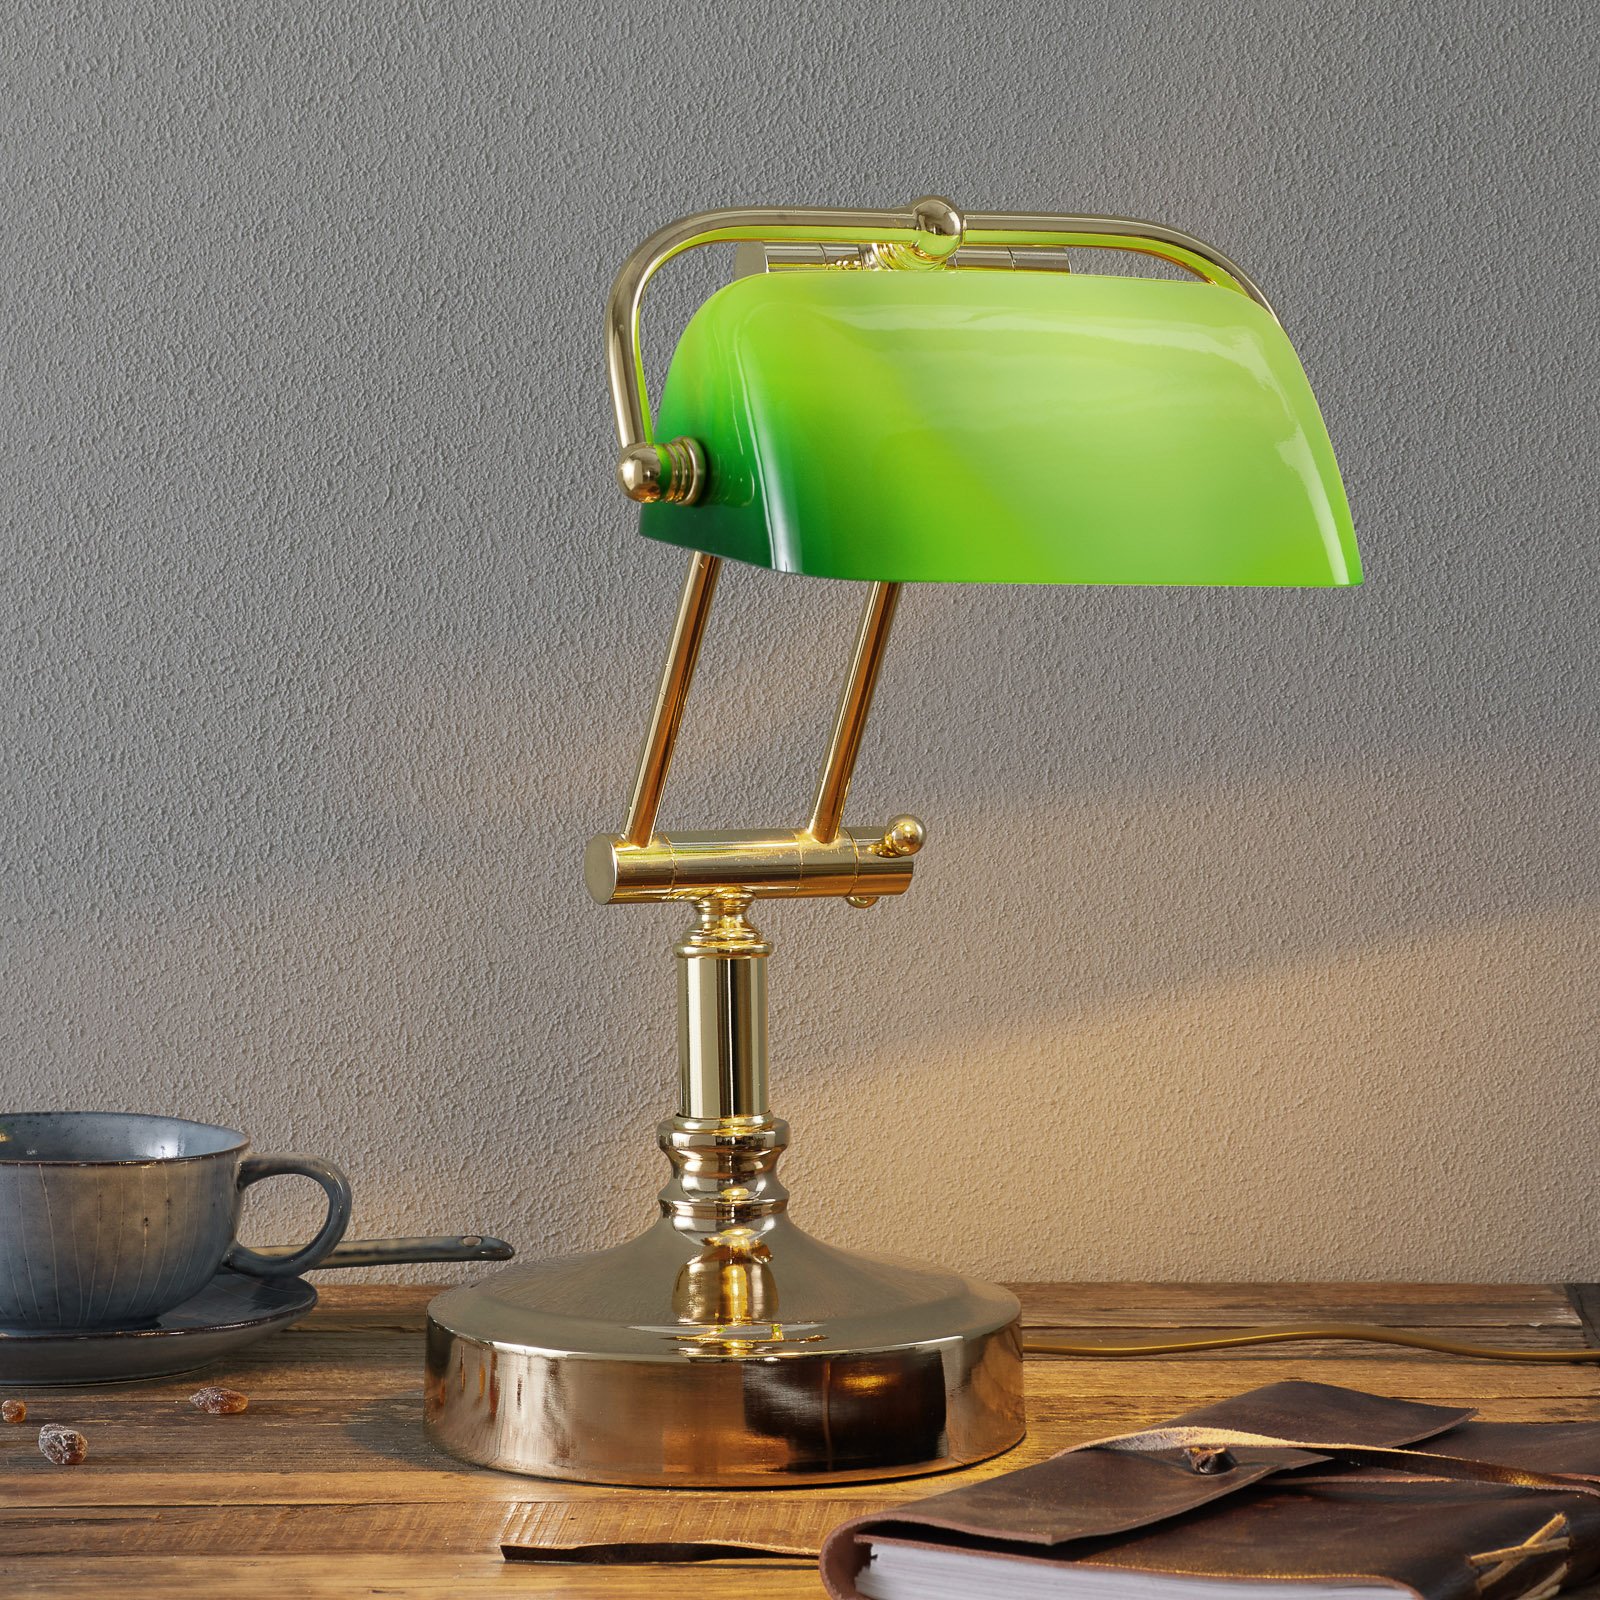 Steve-pankkiirilamppu vihreällä lasivarjostimella